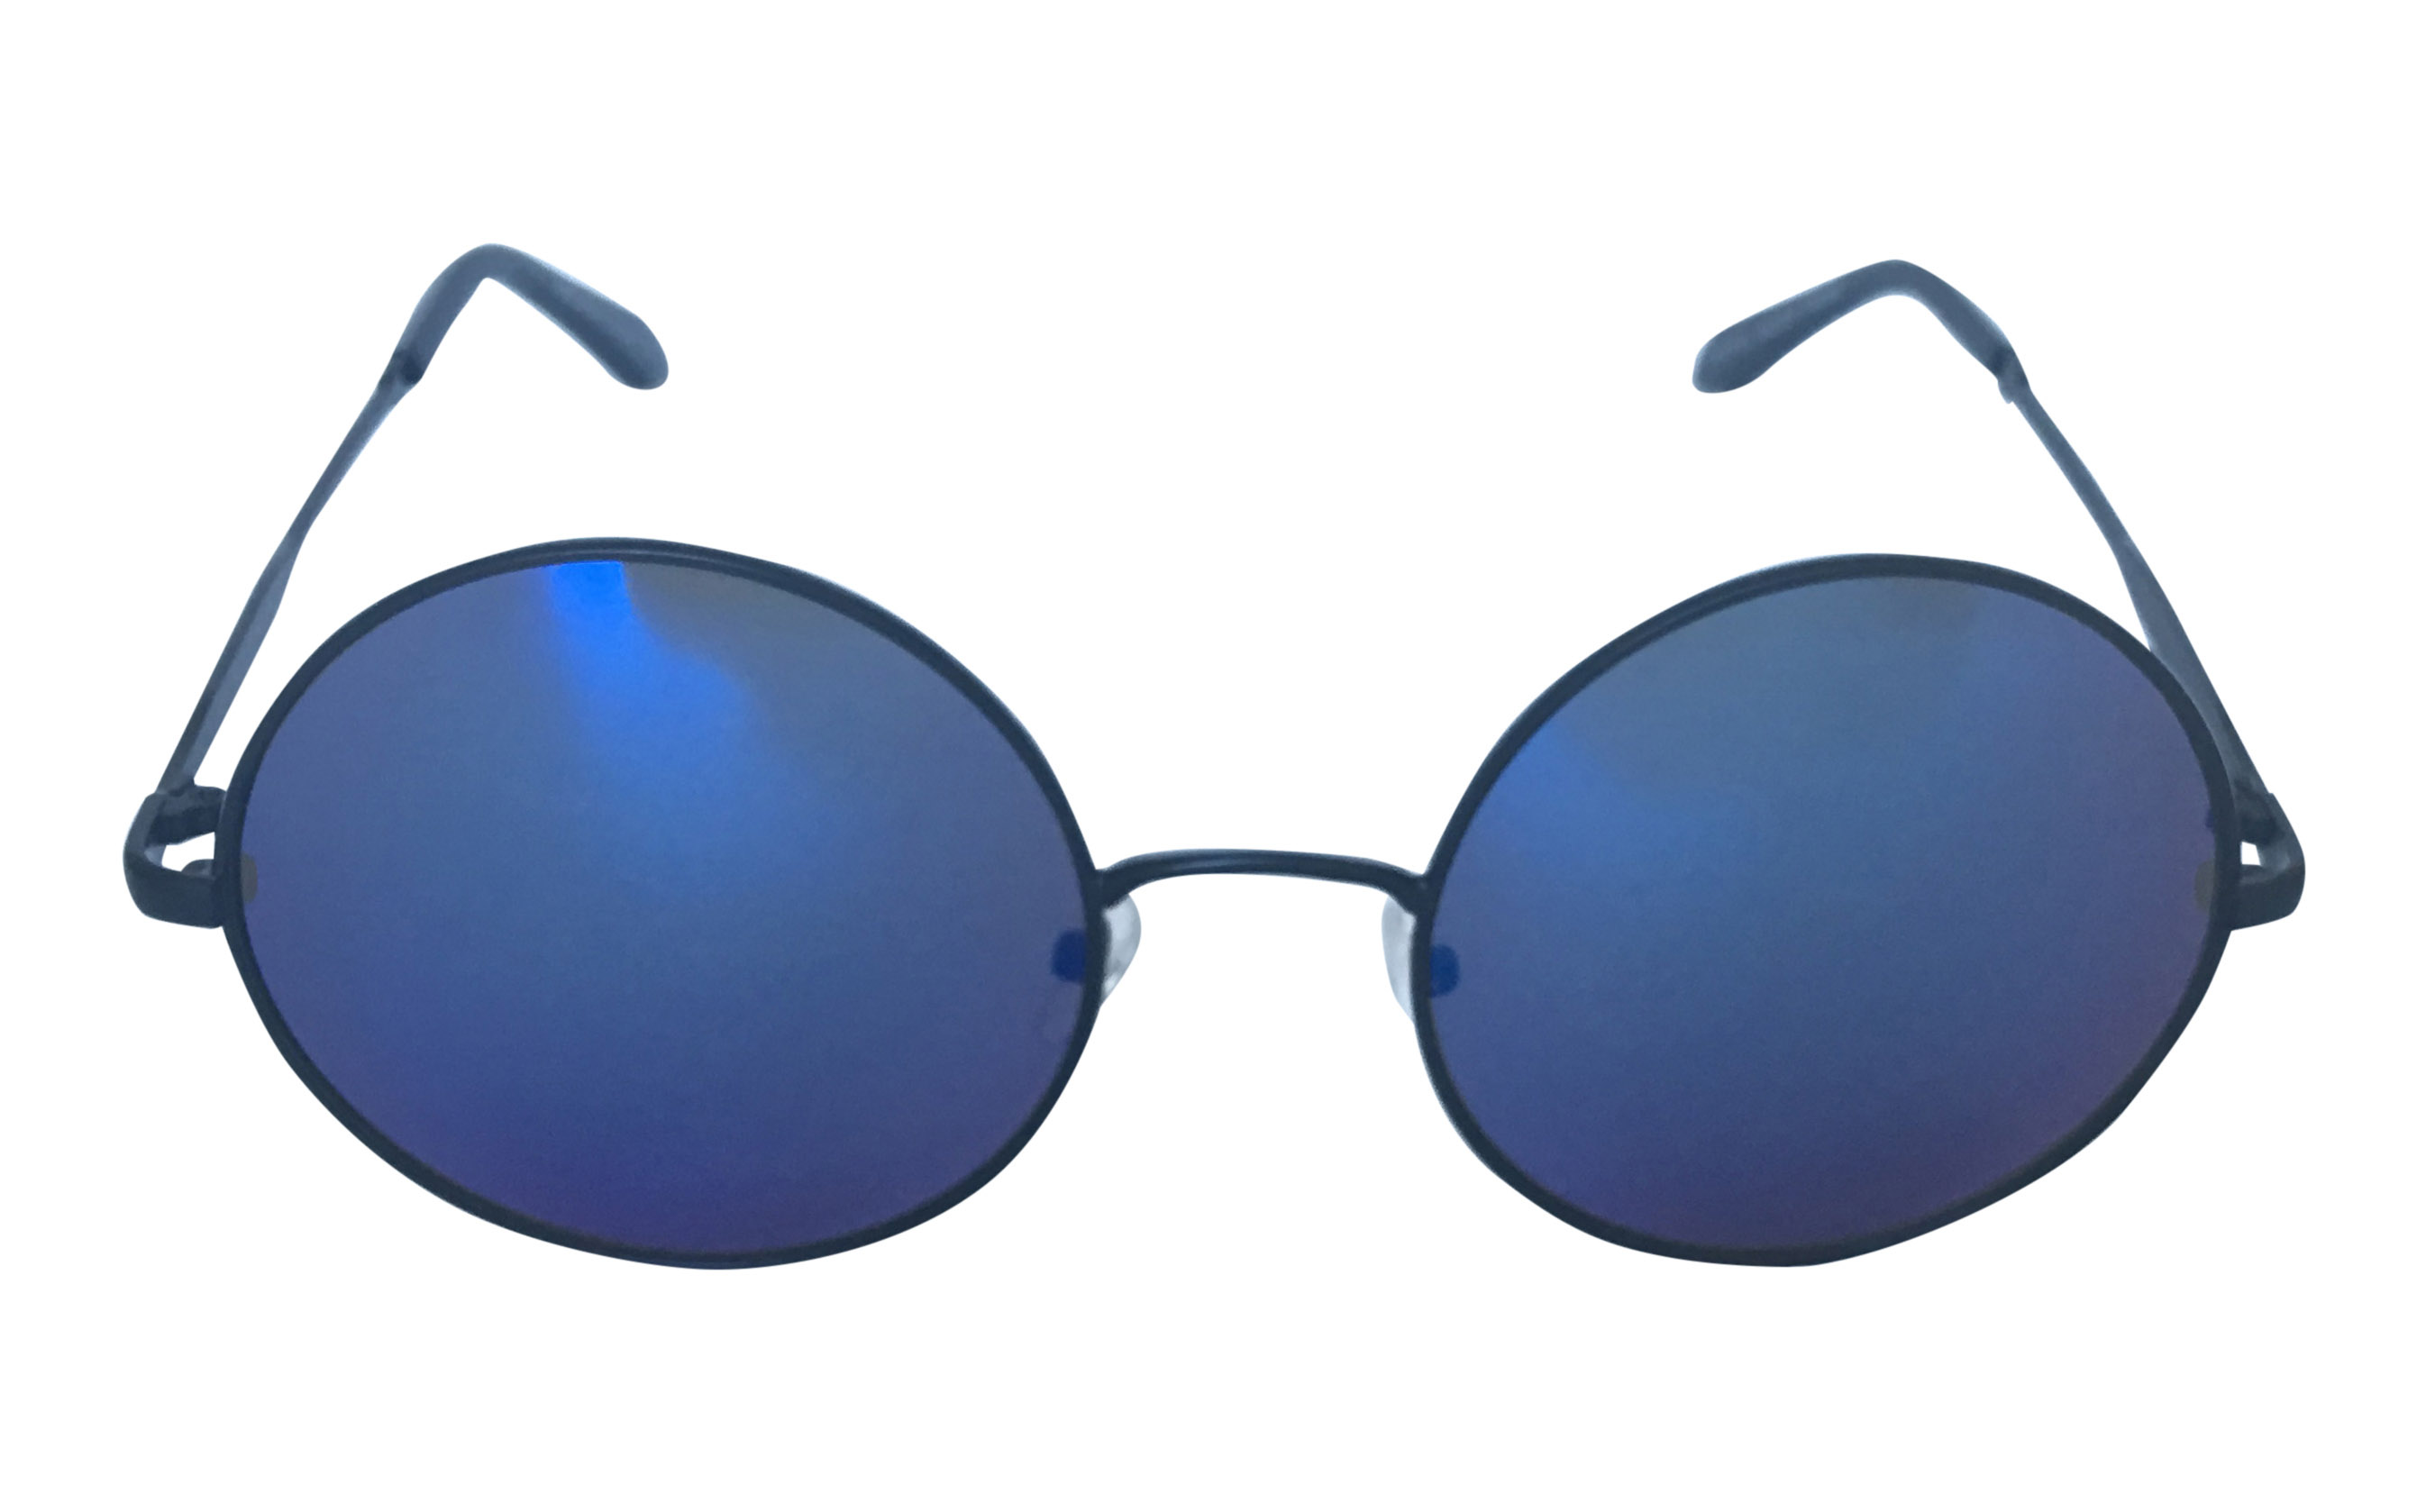 Metal solbrille i oversize design. Sort metal stel med blålige spejlglas. | solbriller_maend